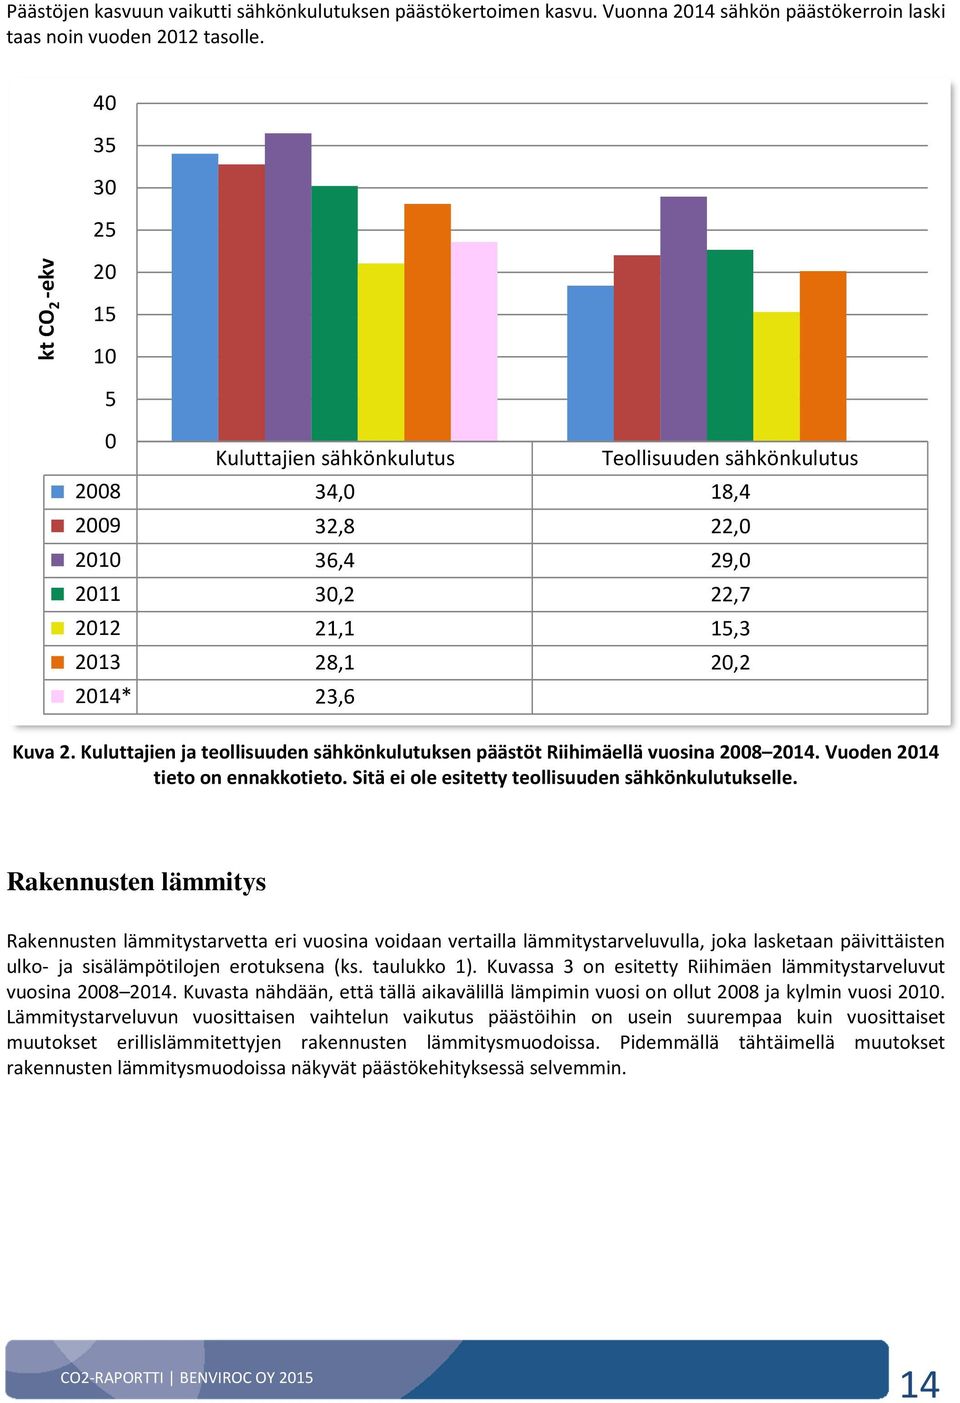 Kuluttajien ja teollisuuden sähkönkulutuksen päästöt Riihimäellä vuosina 2008 2014. Vuoden 2014 tieto on ennakkotieto. Sitä ei ole esitetty teollisuuden sähkönkulutukselle.